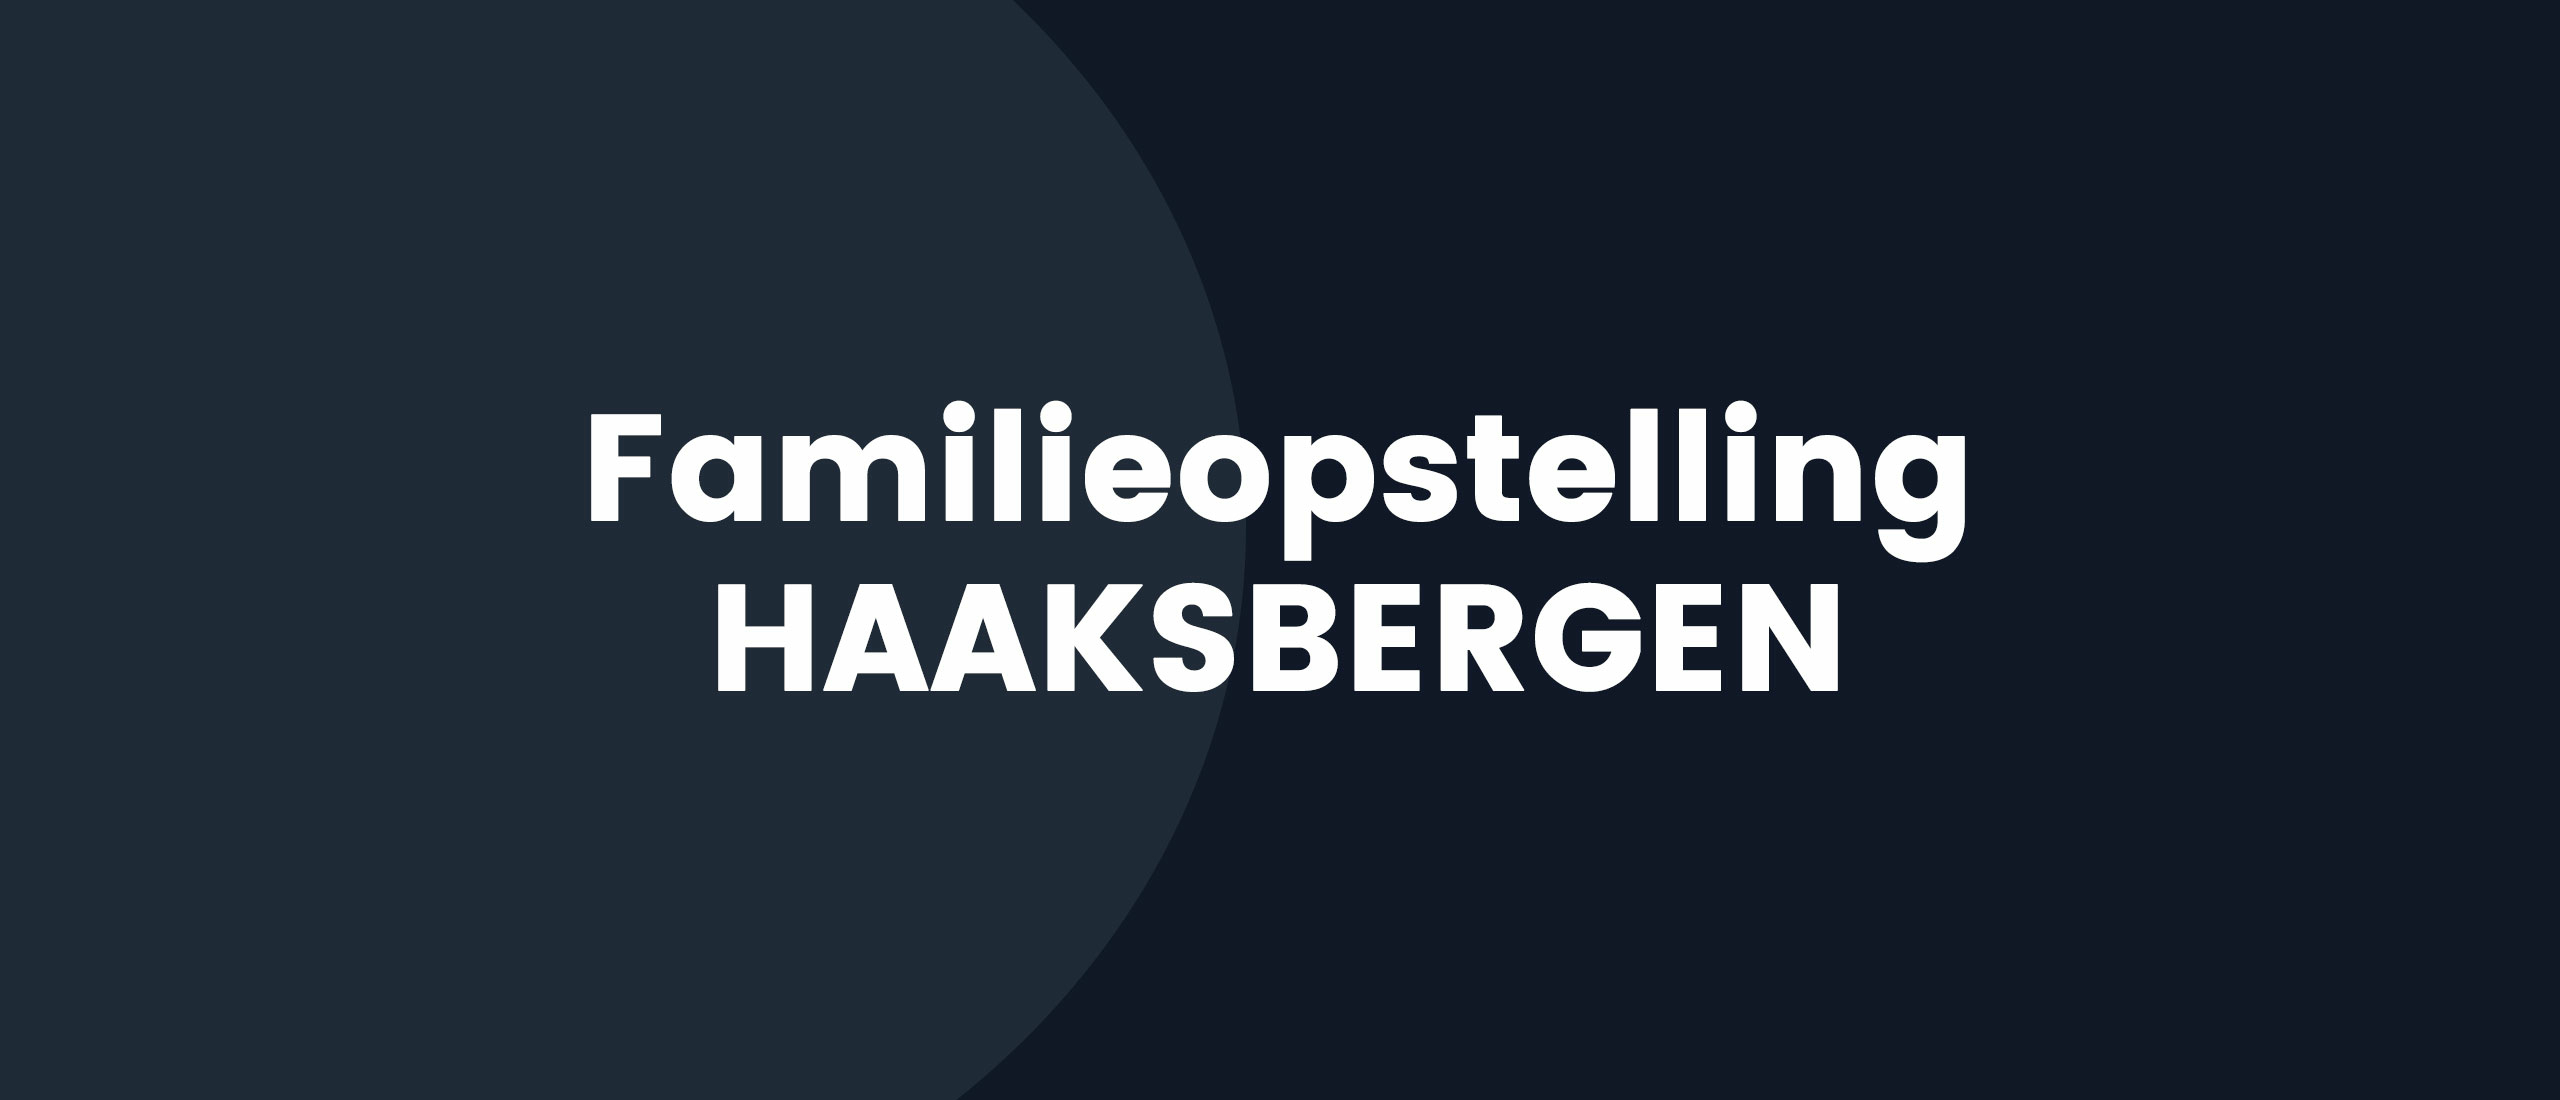 Familieopstelling Haaksbergen